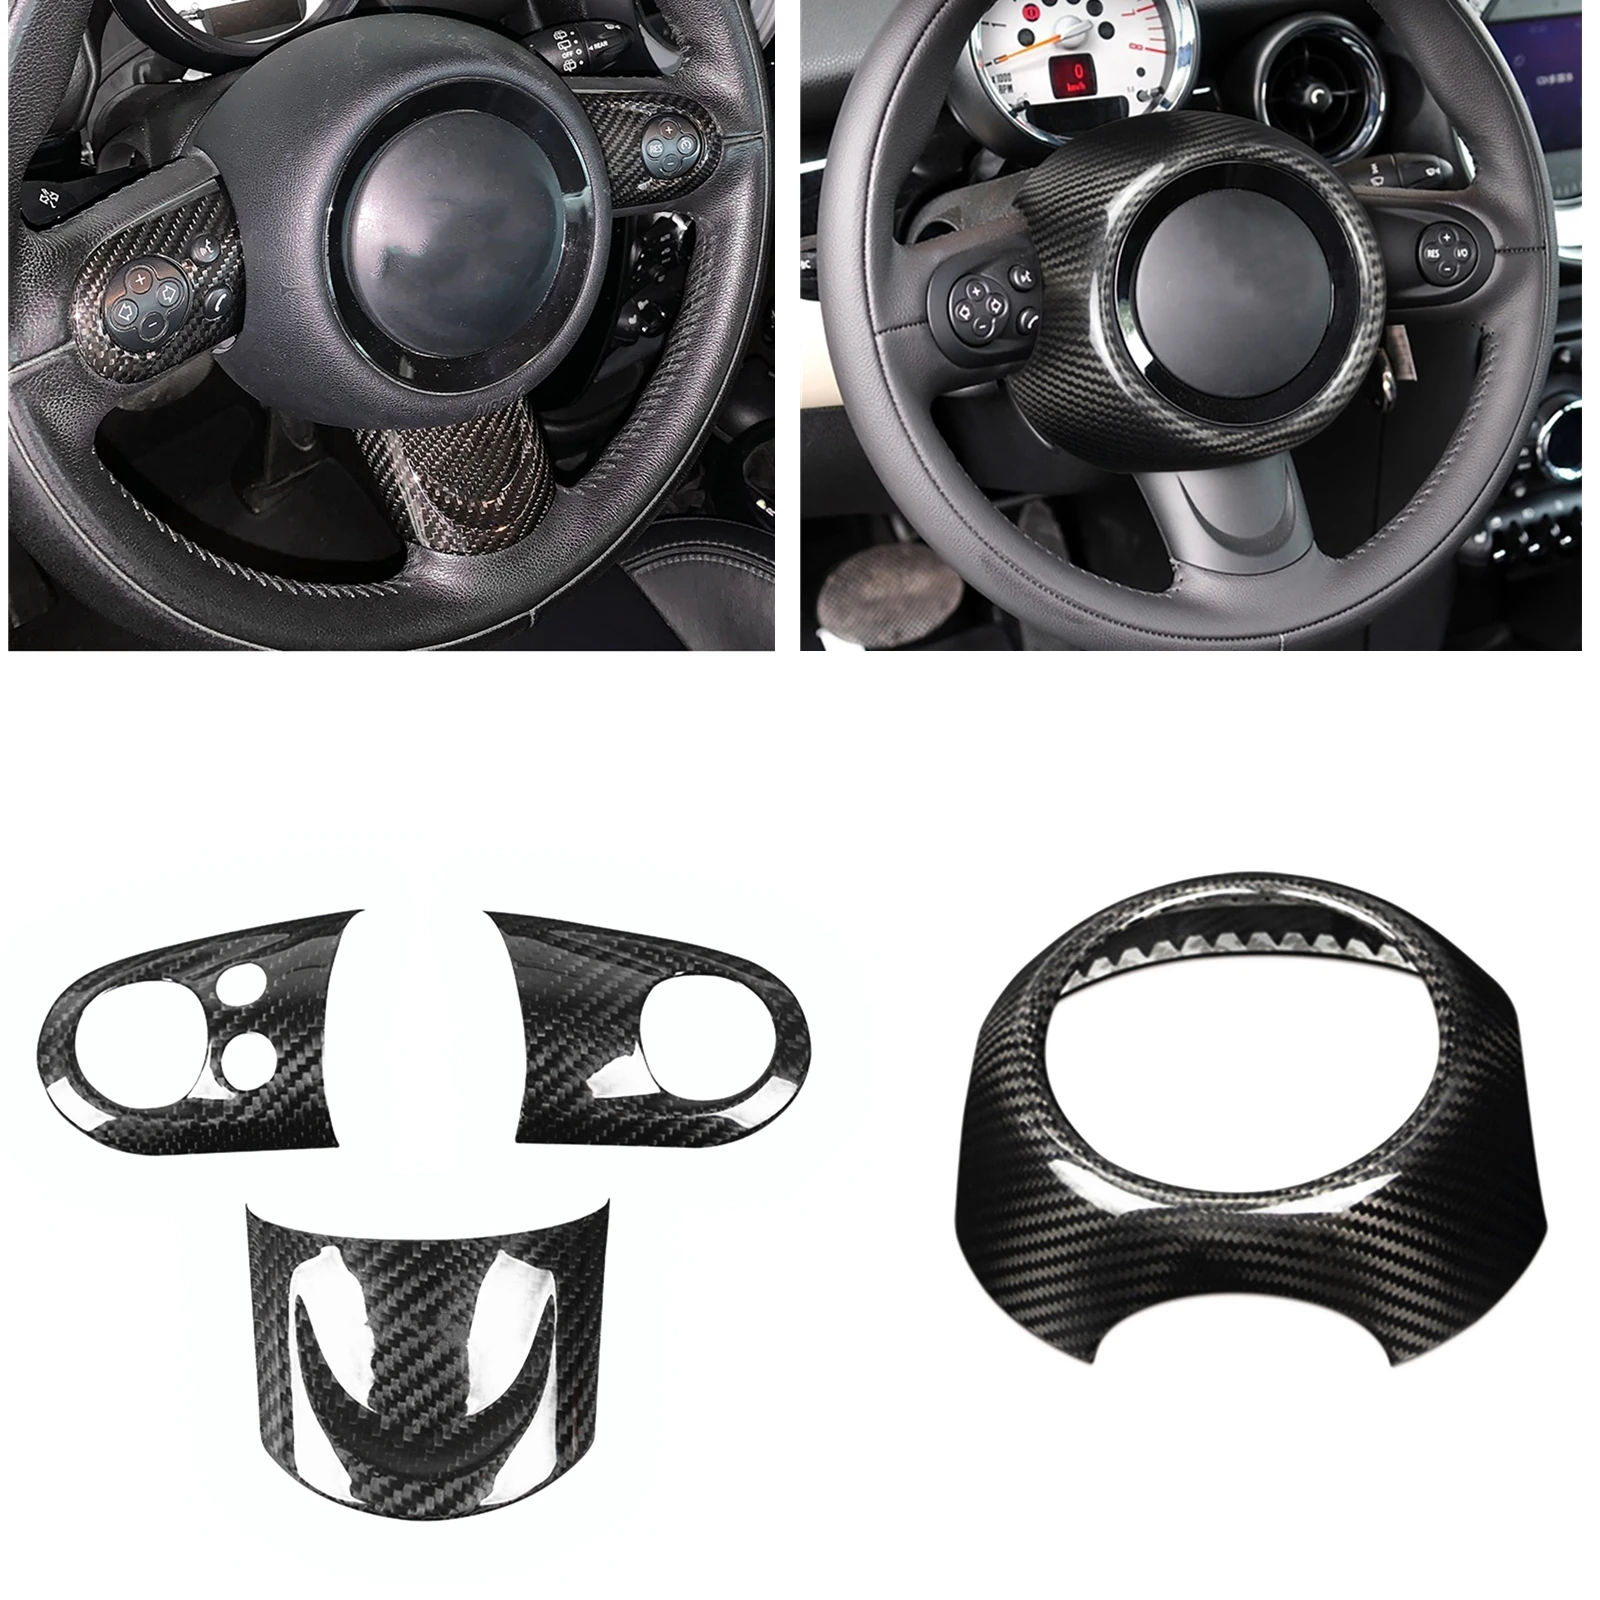 

Панель рулевого колеса + Центральная рамка оболочка ободок отделка для Mini Cooper R Series R55 R56 R57 R58 R59 R60 R61 Настоящее углеродное волокно